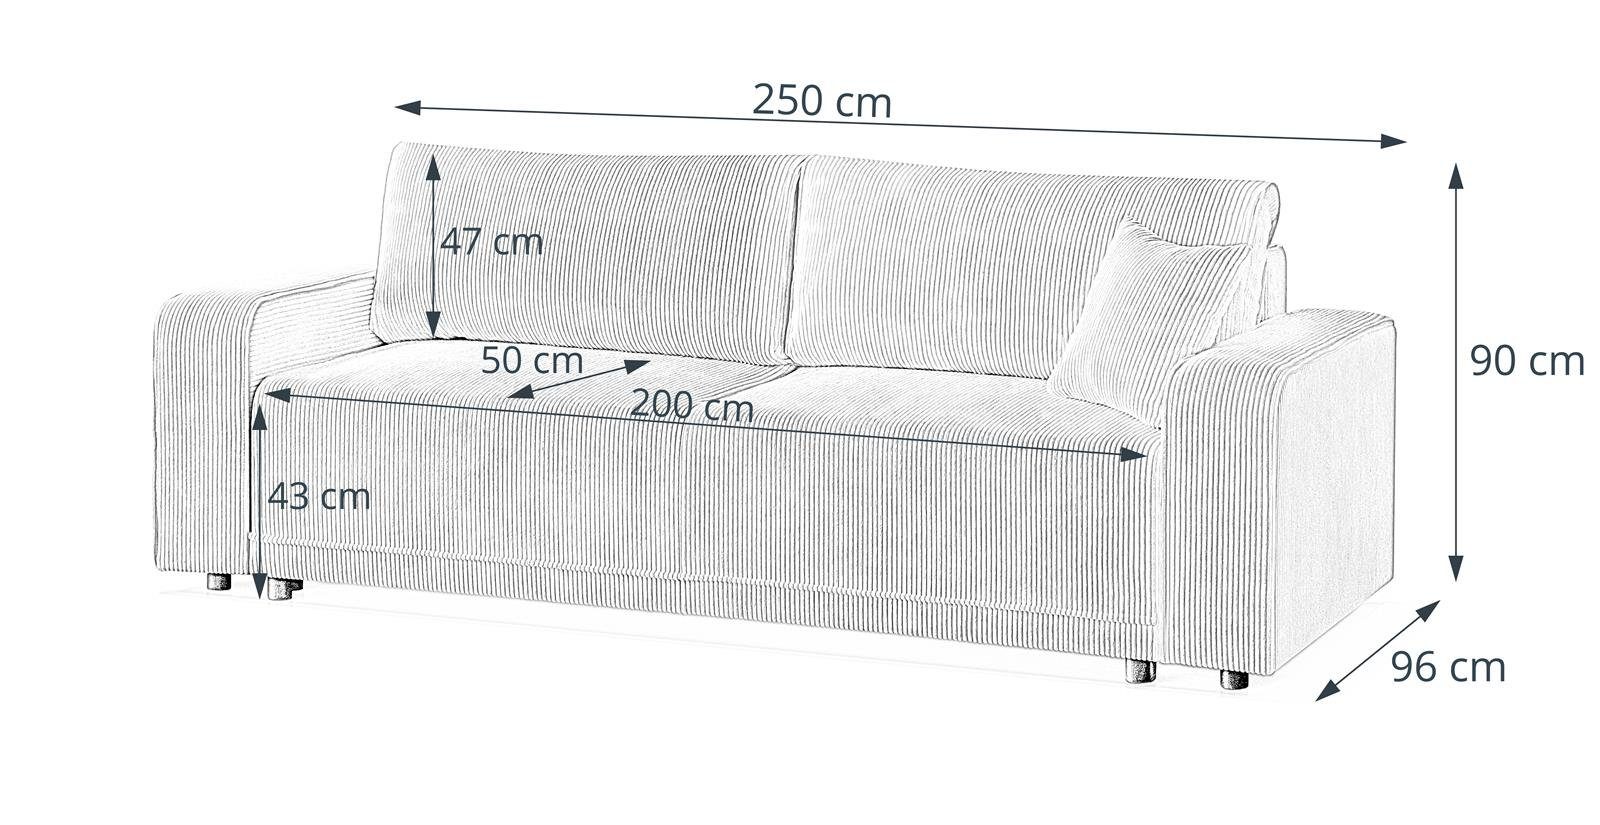 Schlafsofa Wellenfedern, PRIMO, Schlaffunktion, Beautysofa modernes Senfgelb Design (poso 01) breite Sofa, Bettkasten, Armlehnen